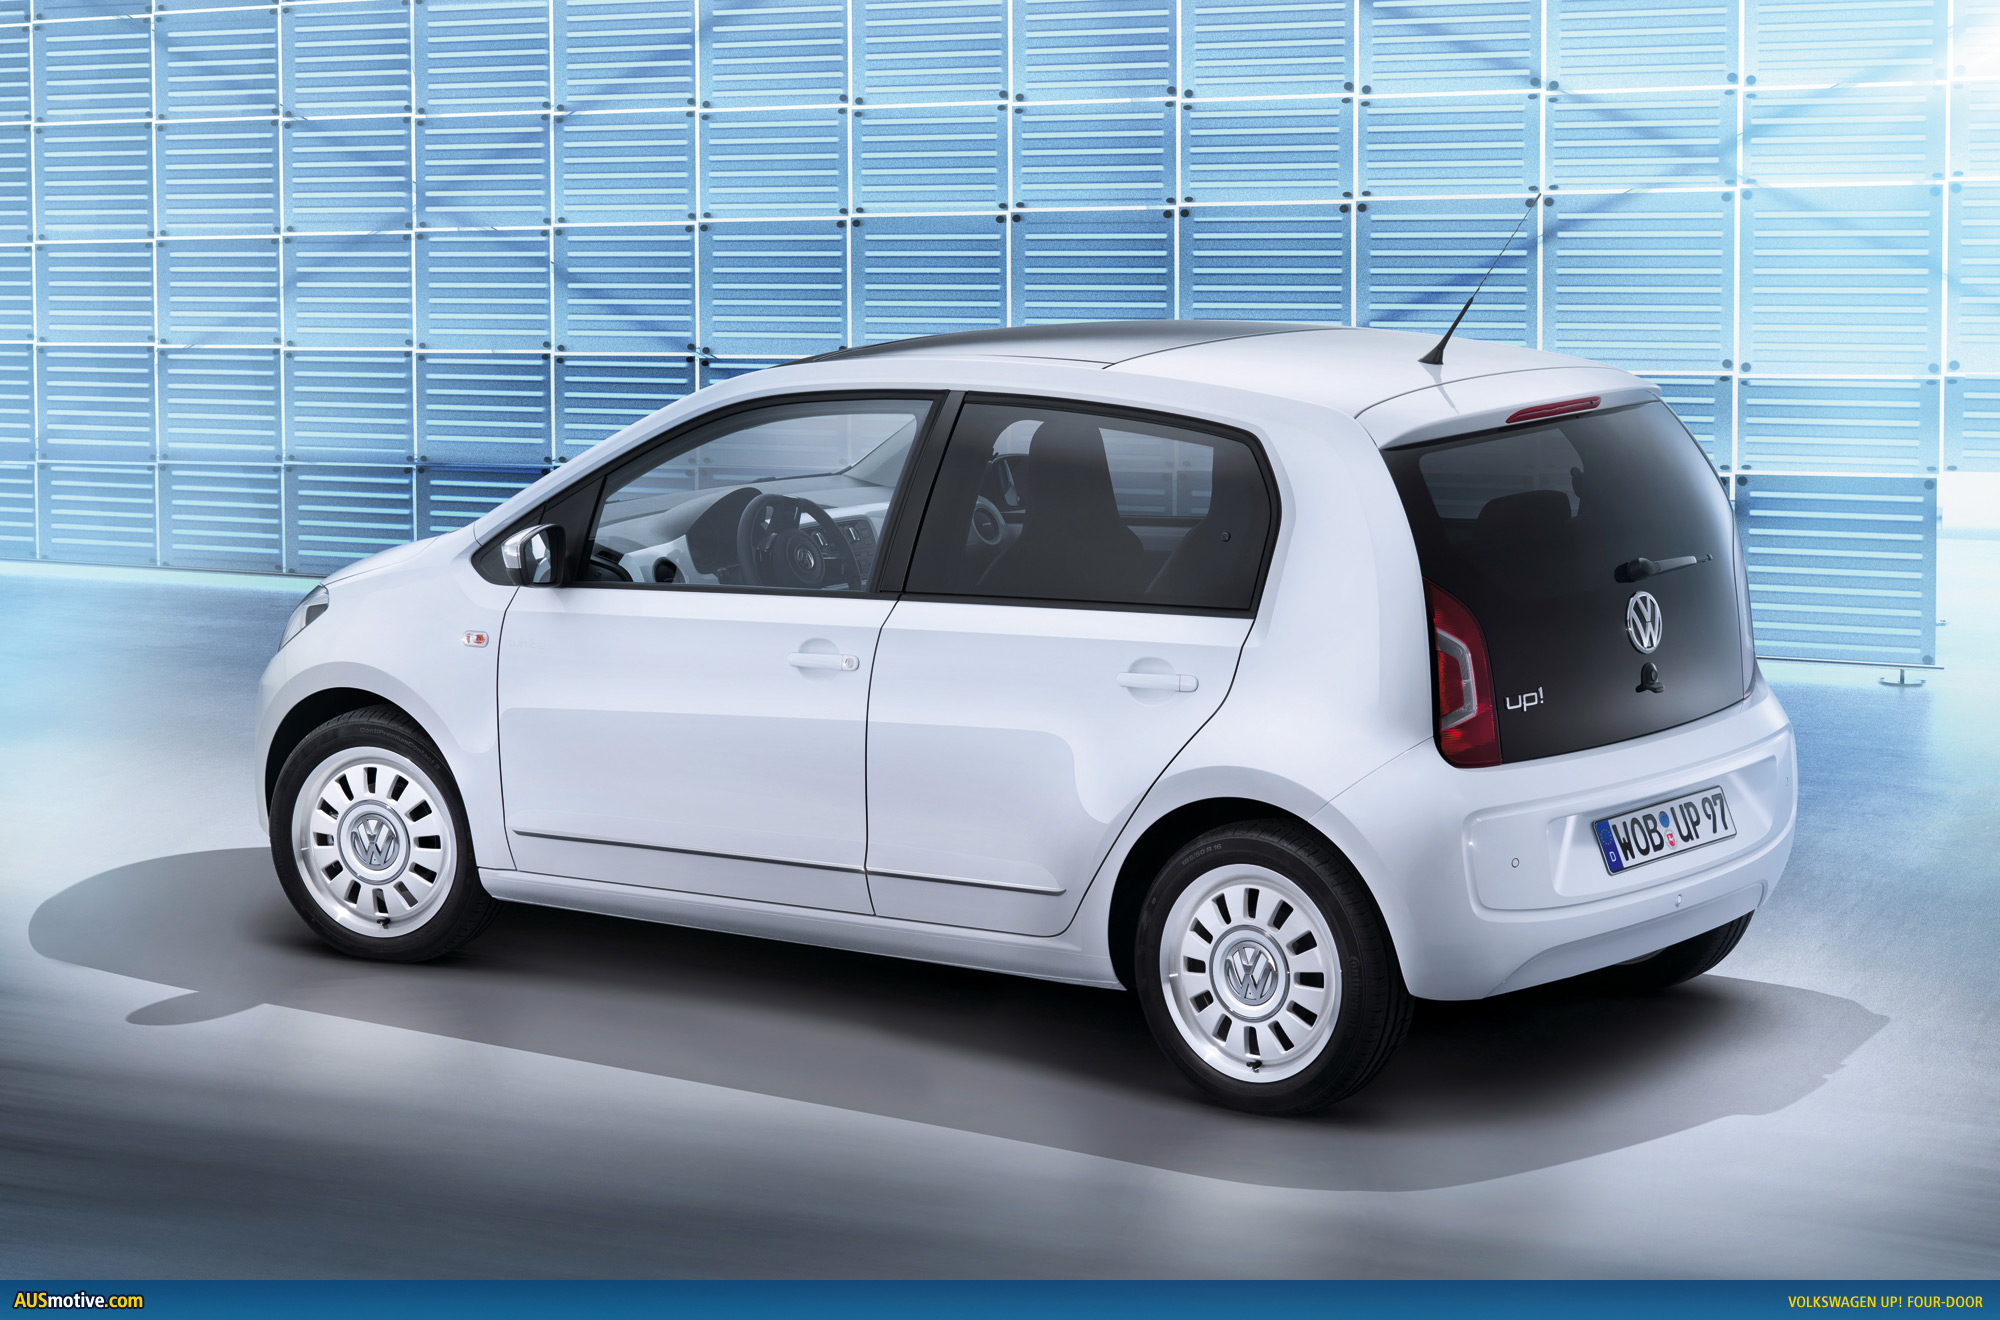 boete reptielen Banyan AUSmotive.com » Volkswagen up! opens new doors